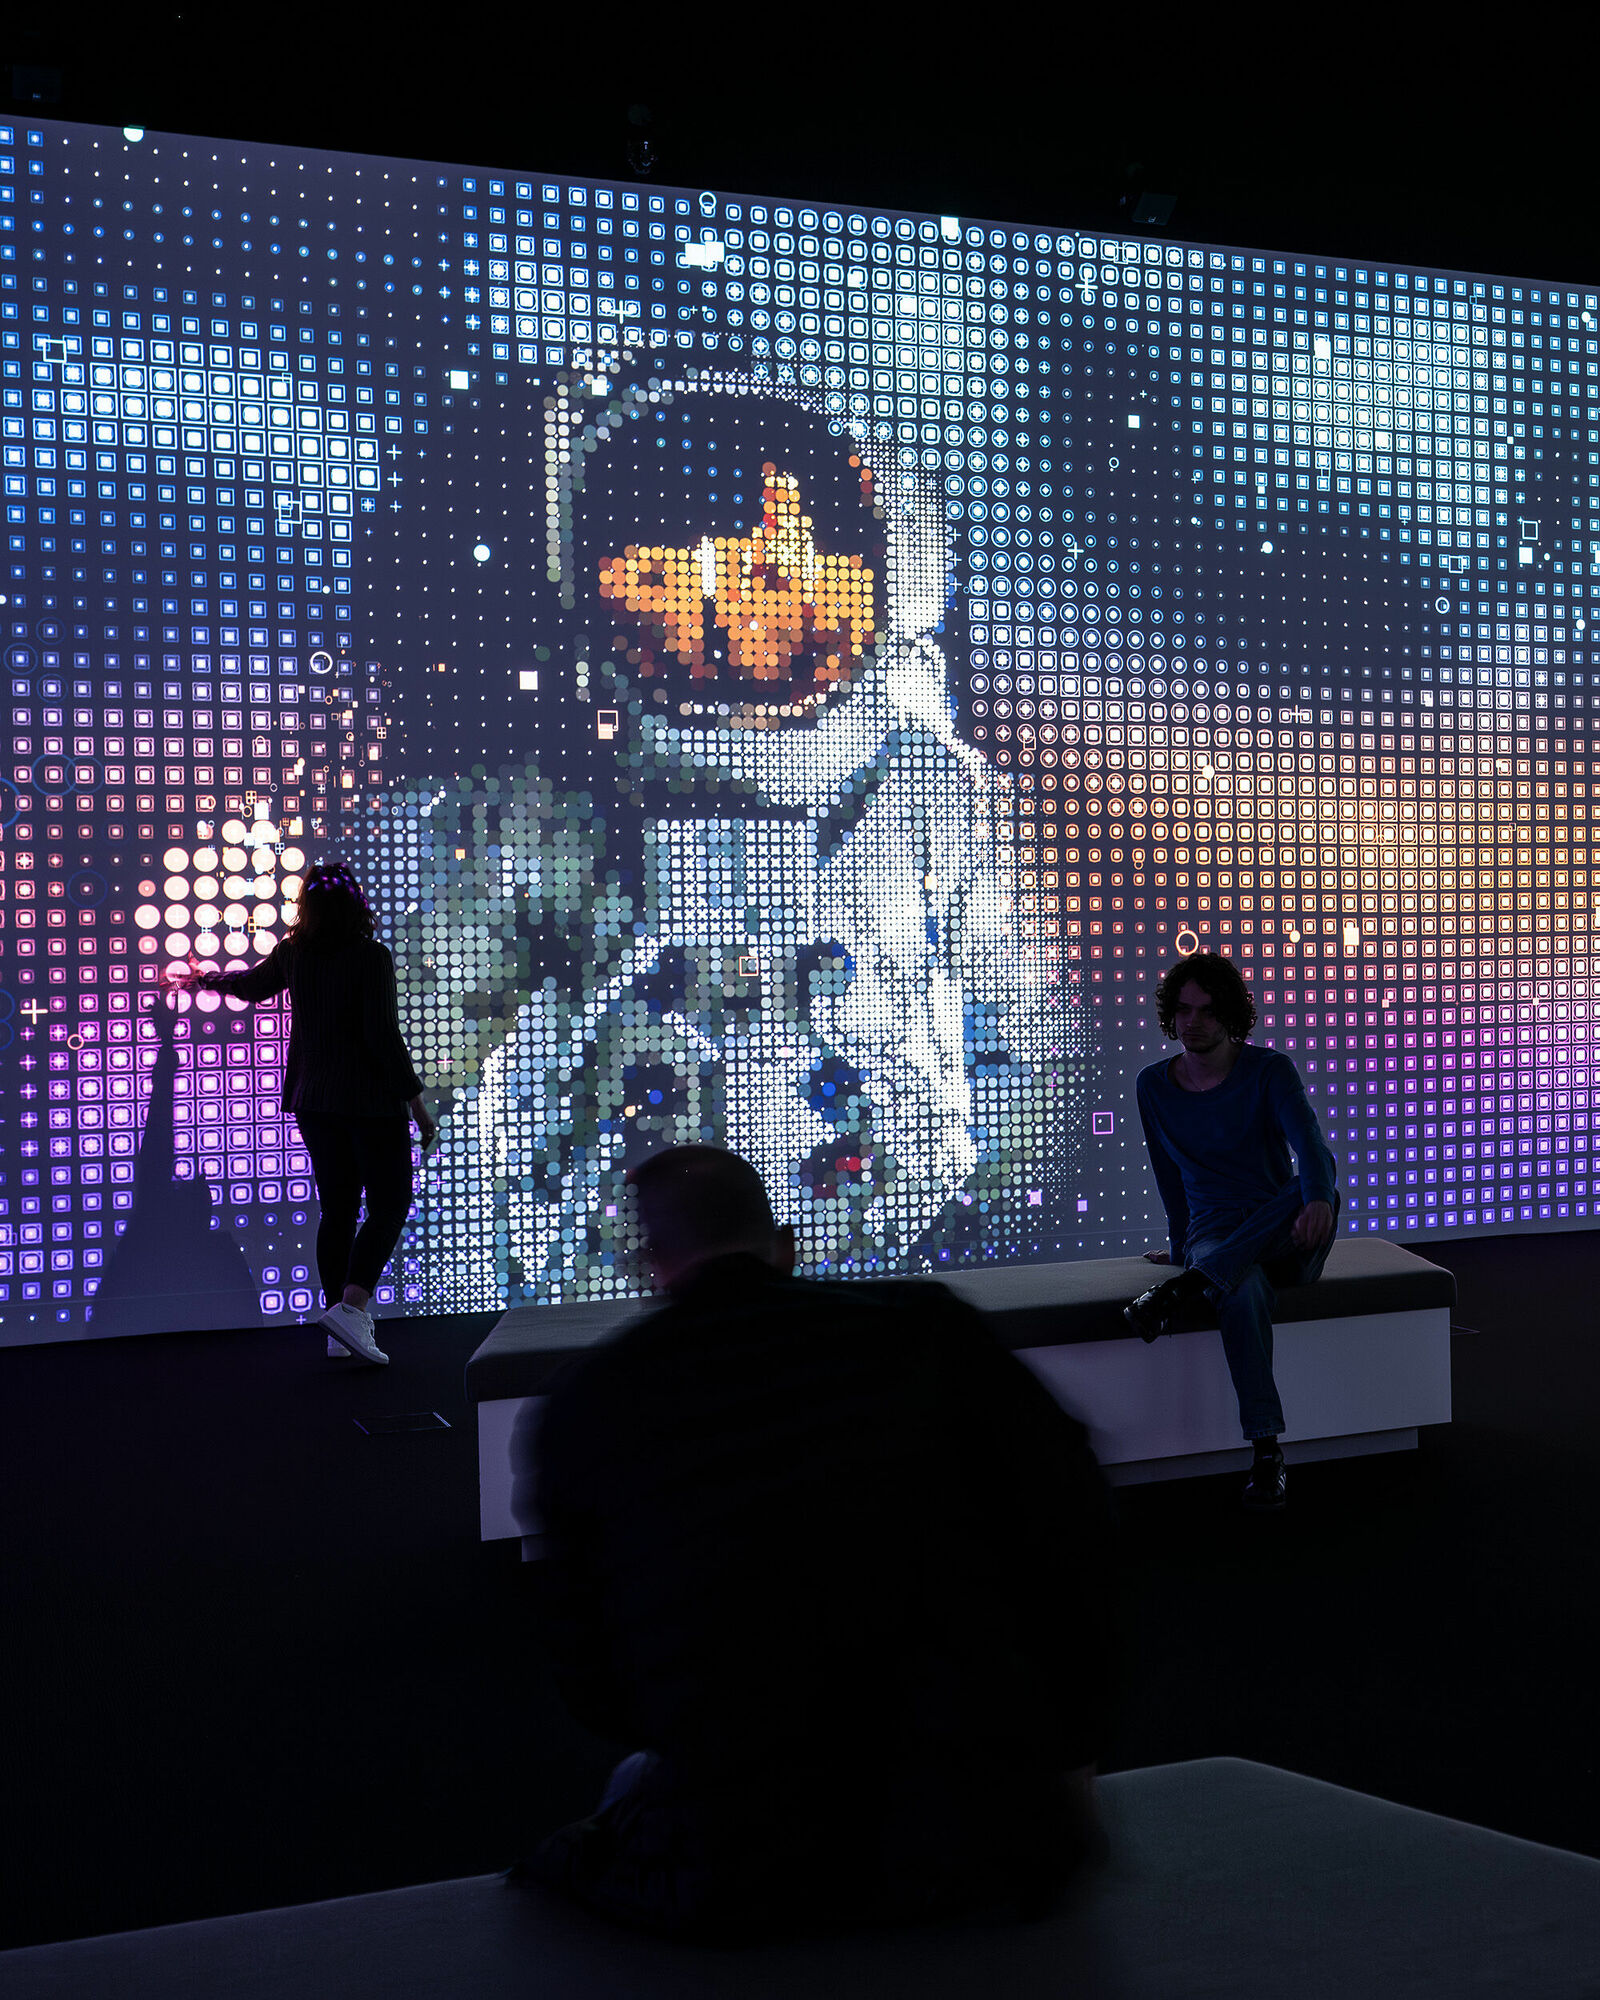 Besucher betrachten ein großes Wanddisplay mit pixeligen Darstellungen eines Astronauten im Weltall.